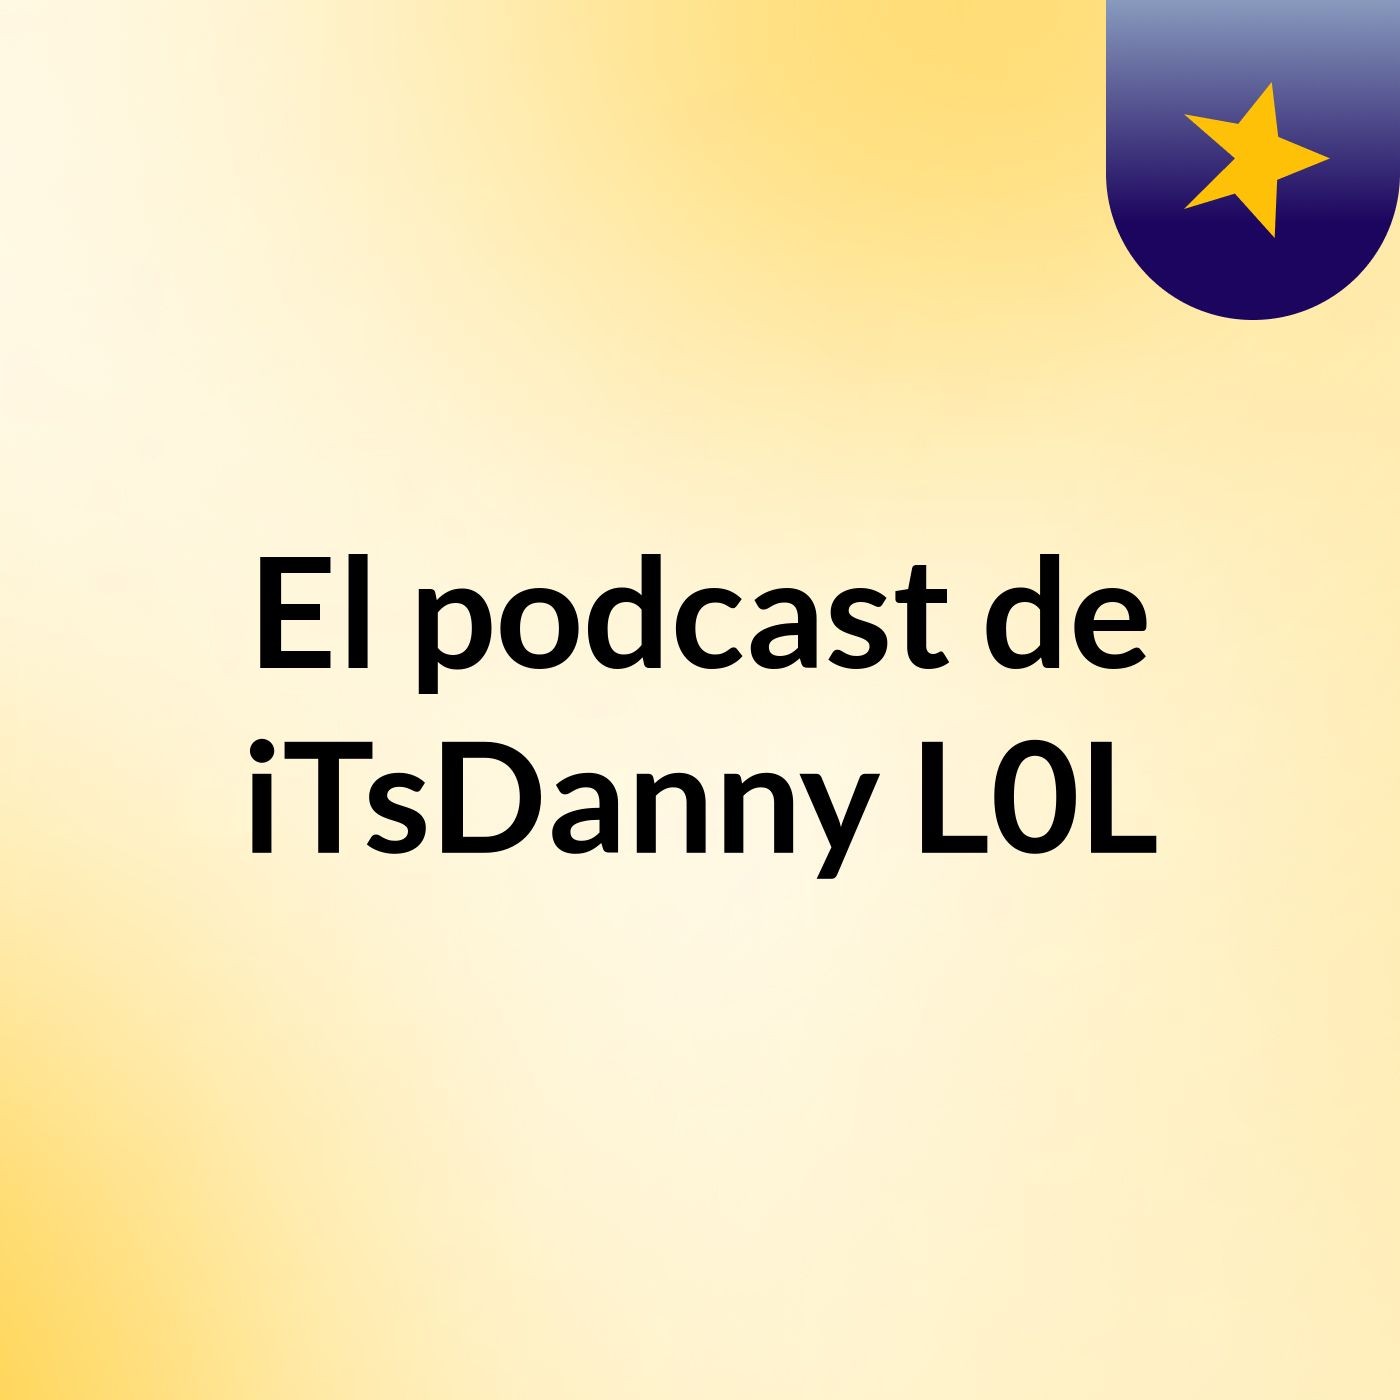 Episodio 1 - El podcast de iTsDanny L0L